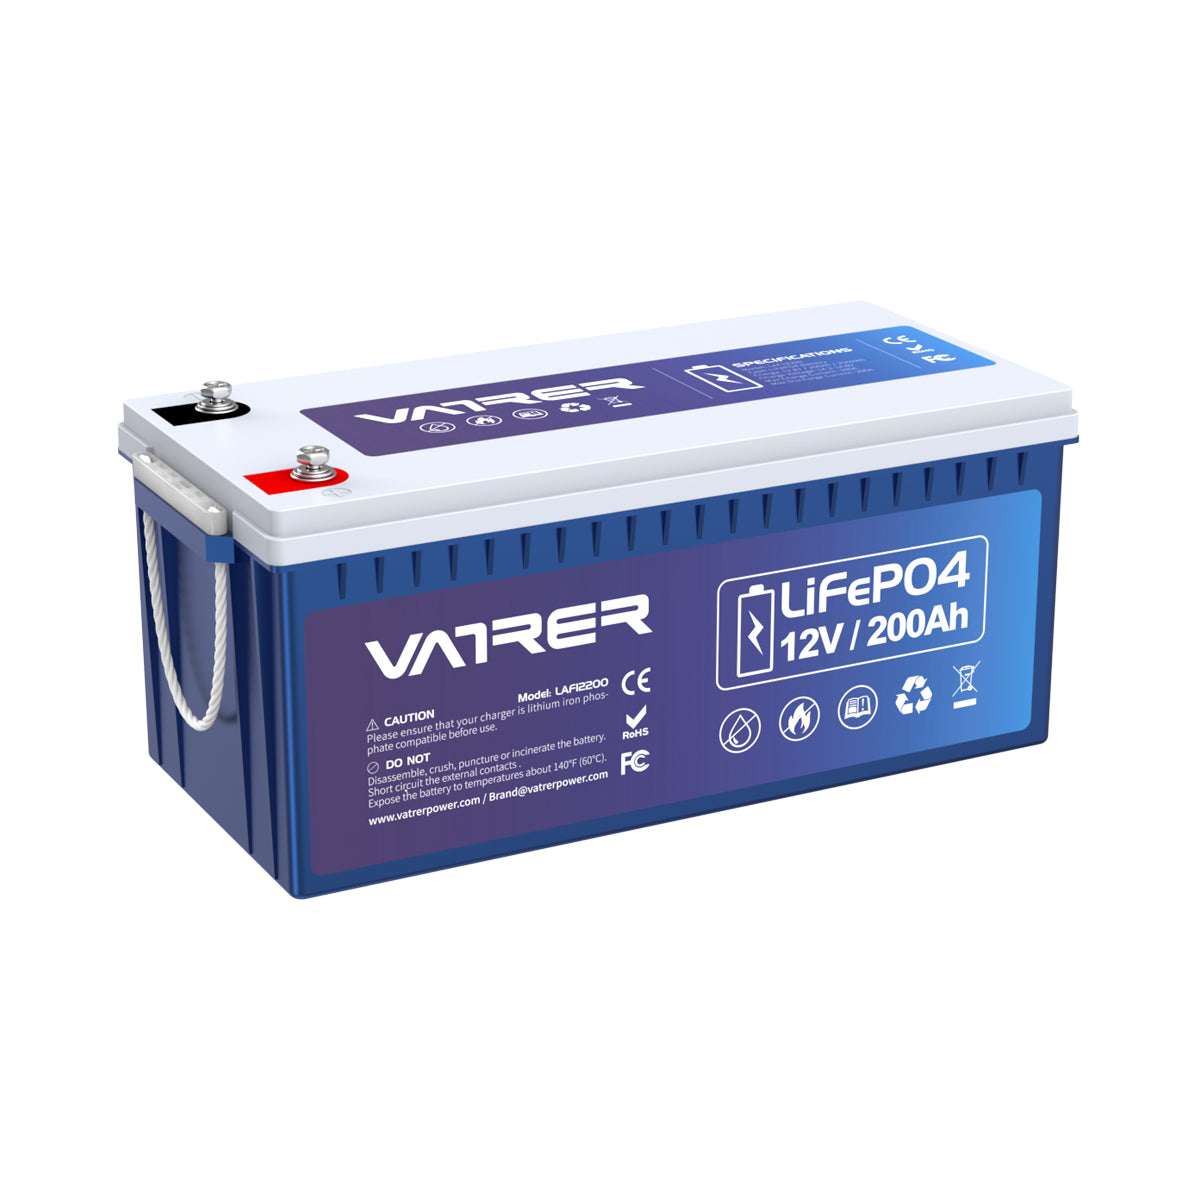 12V 200Ah más batería de litio LiFePO4, 200A BMS incorporado y corte de baja temperatura 11